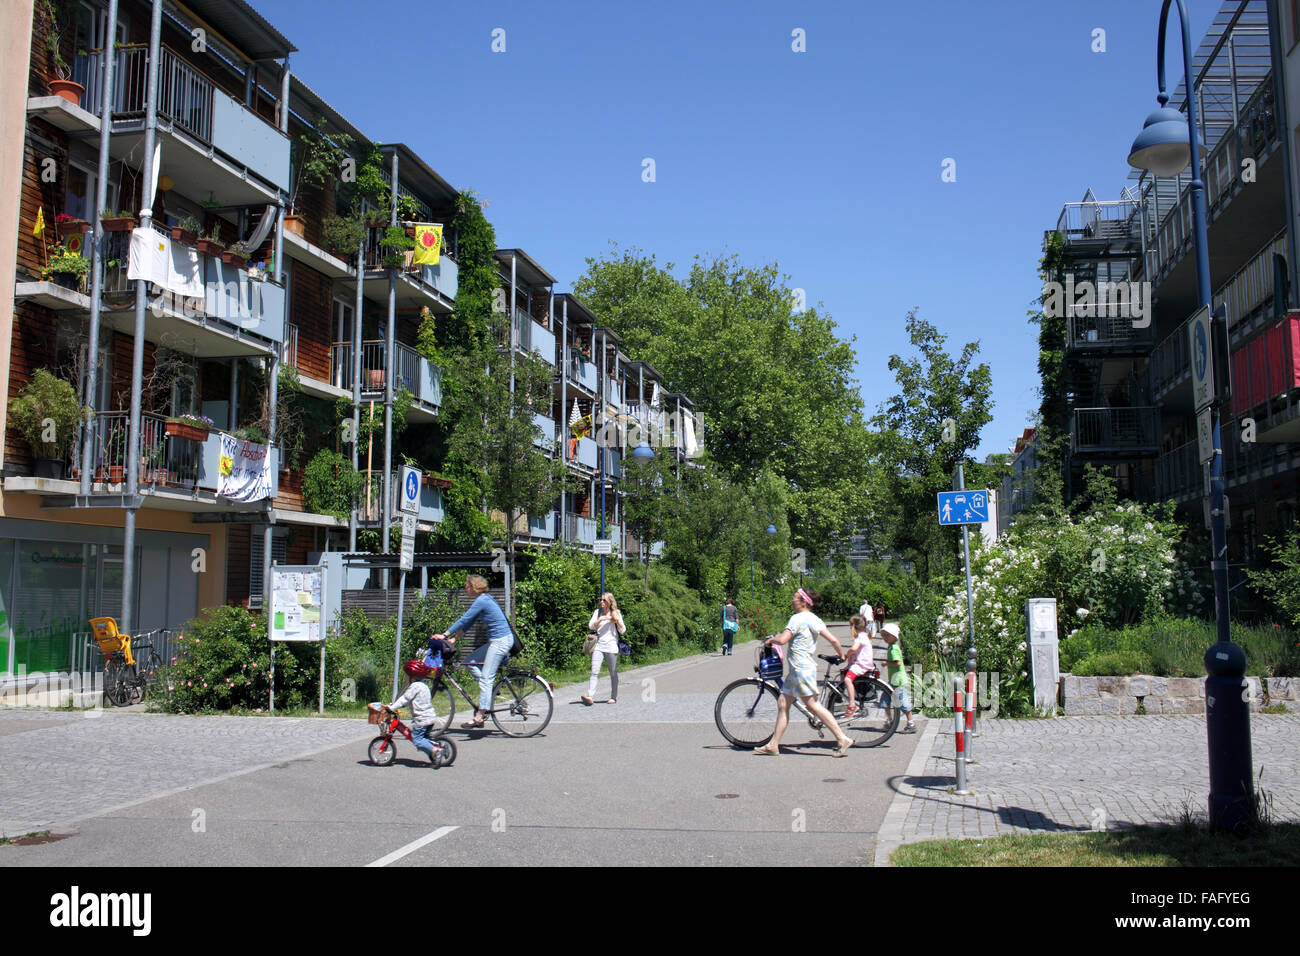 Vivienda y ciclistas en el verde barrio de Vauban, Friburgo, Alemania. Foto de stock